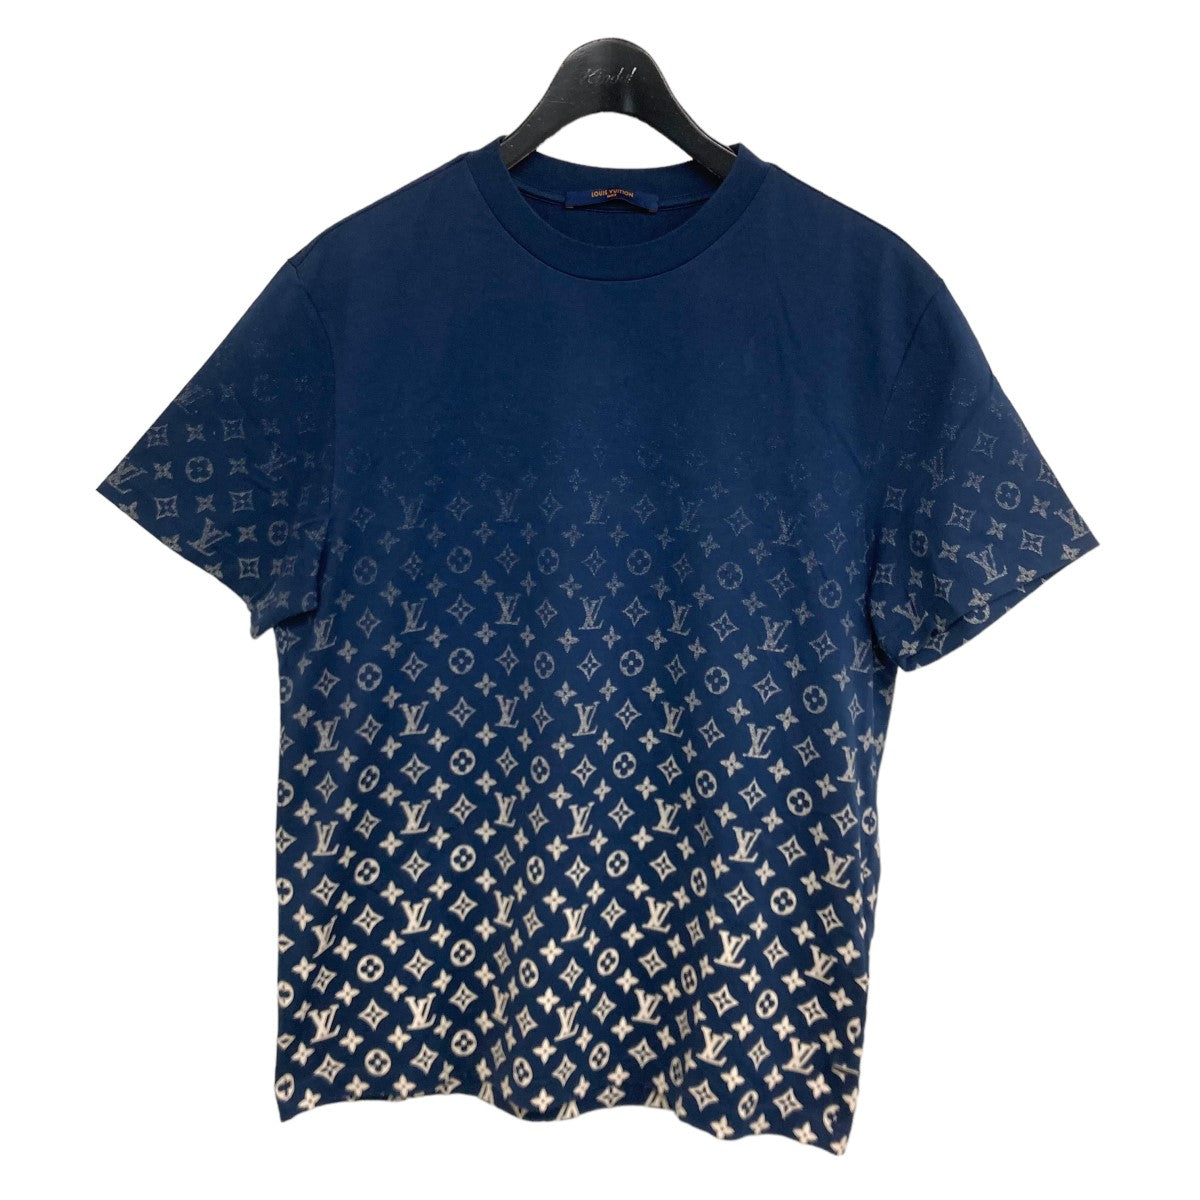 18,000円✨使用数回✨ ルイヴィトン グラディエント モノグラム Tシャツ 21SS 半袖